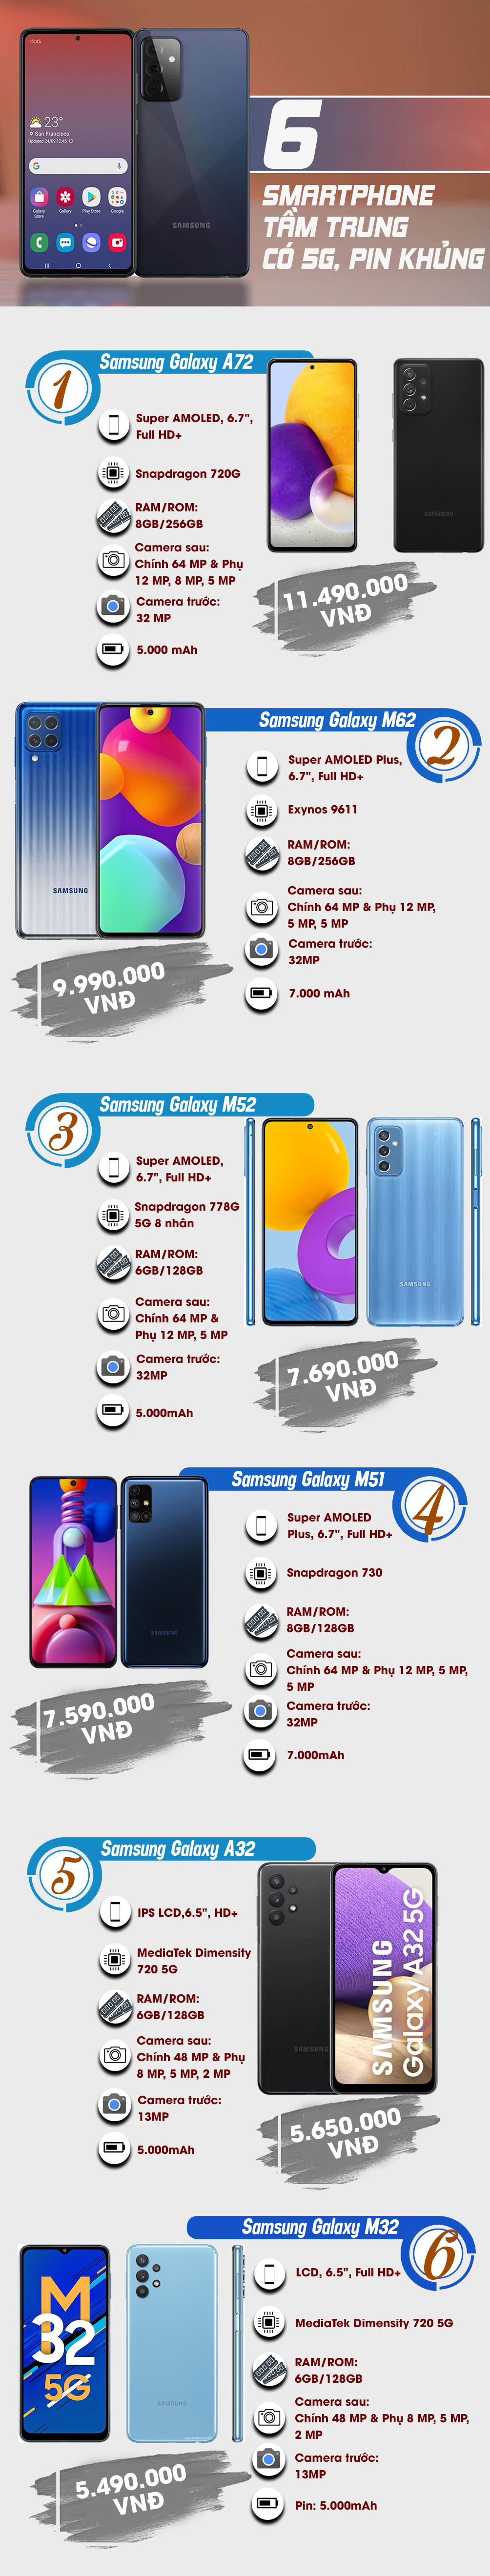 Những smartphone Samsung tầm trung được trang bị 5G, pin khủng - 1